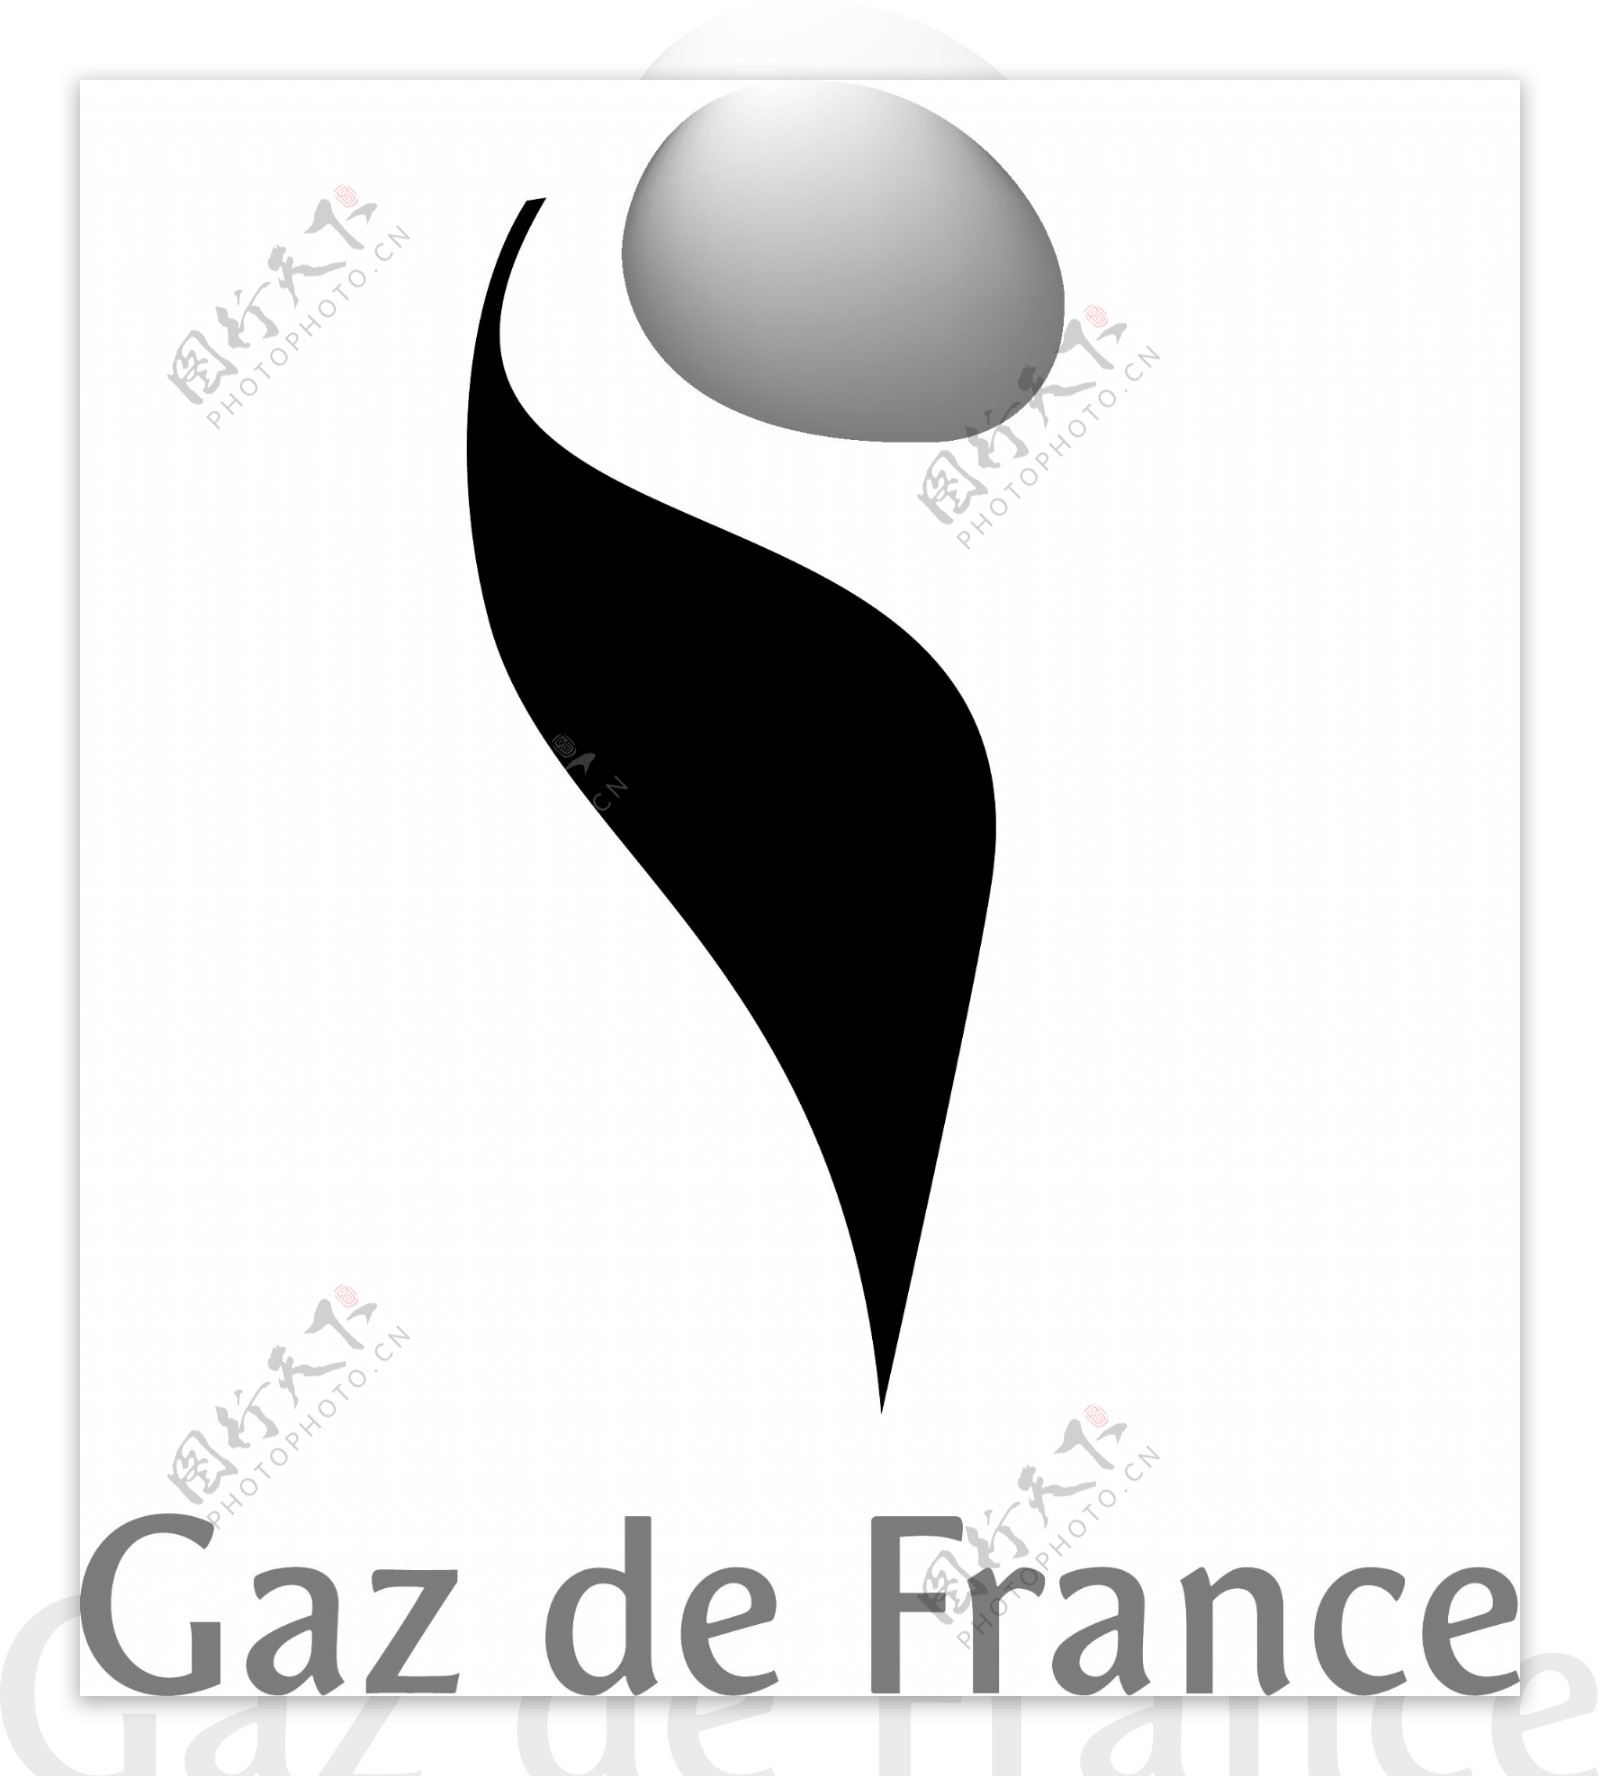 法国燃气公司